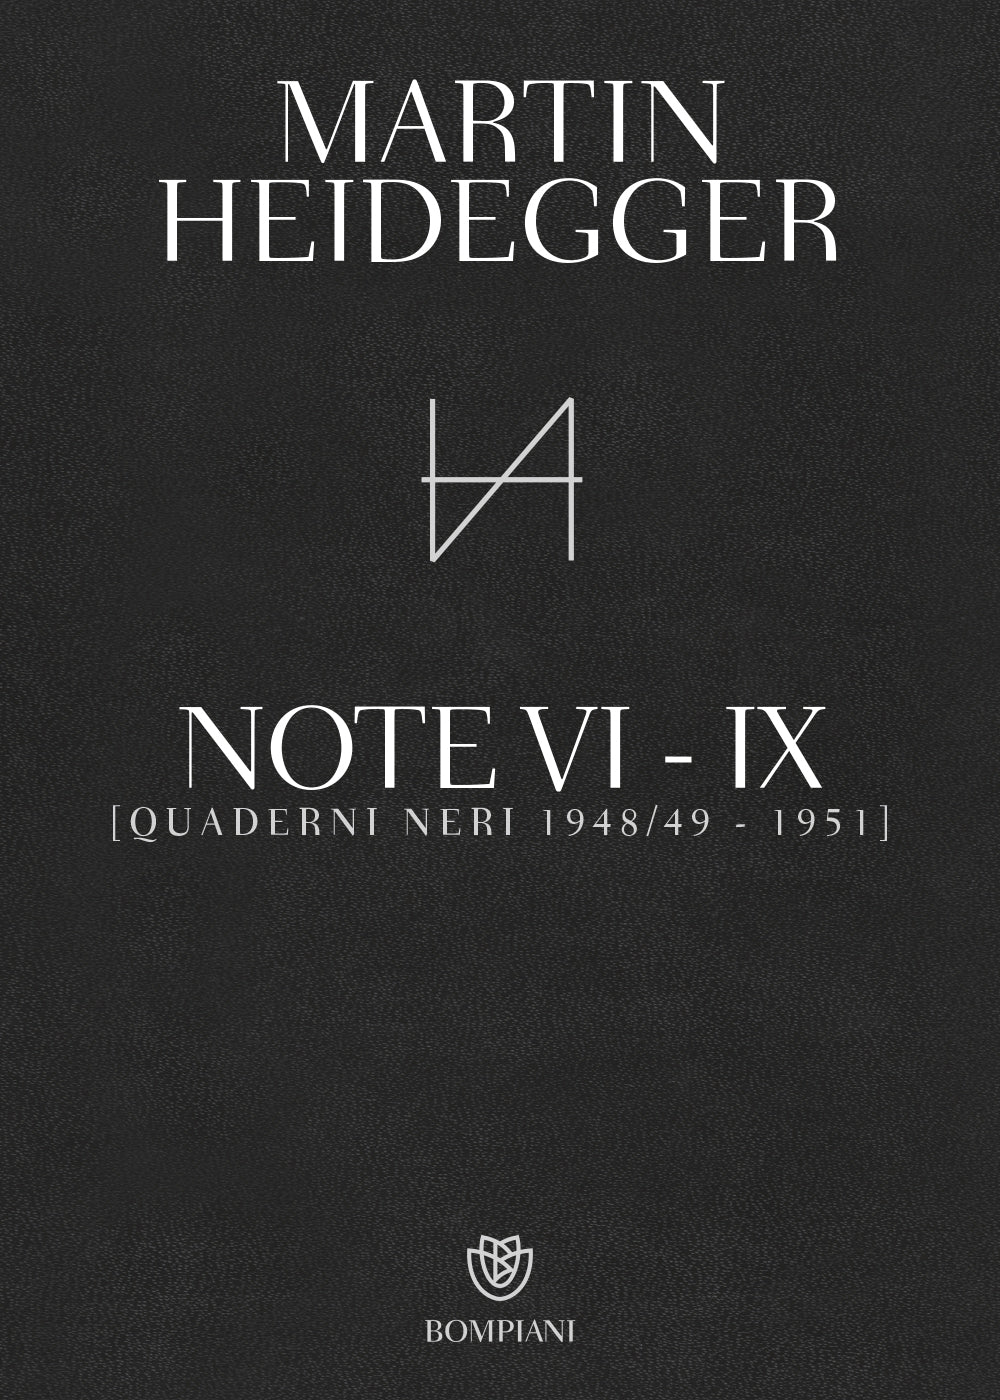 Note VI - IX . (Quaderni neri 1948/49 - 1951)